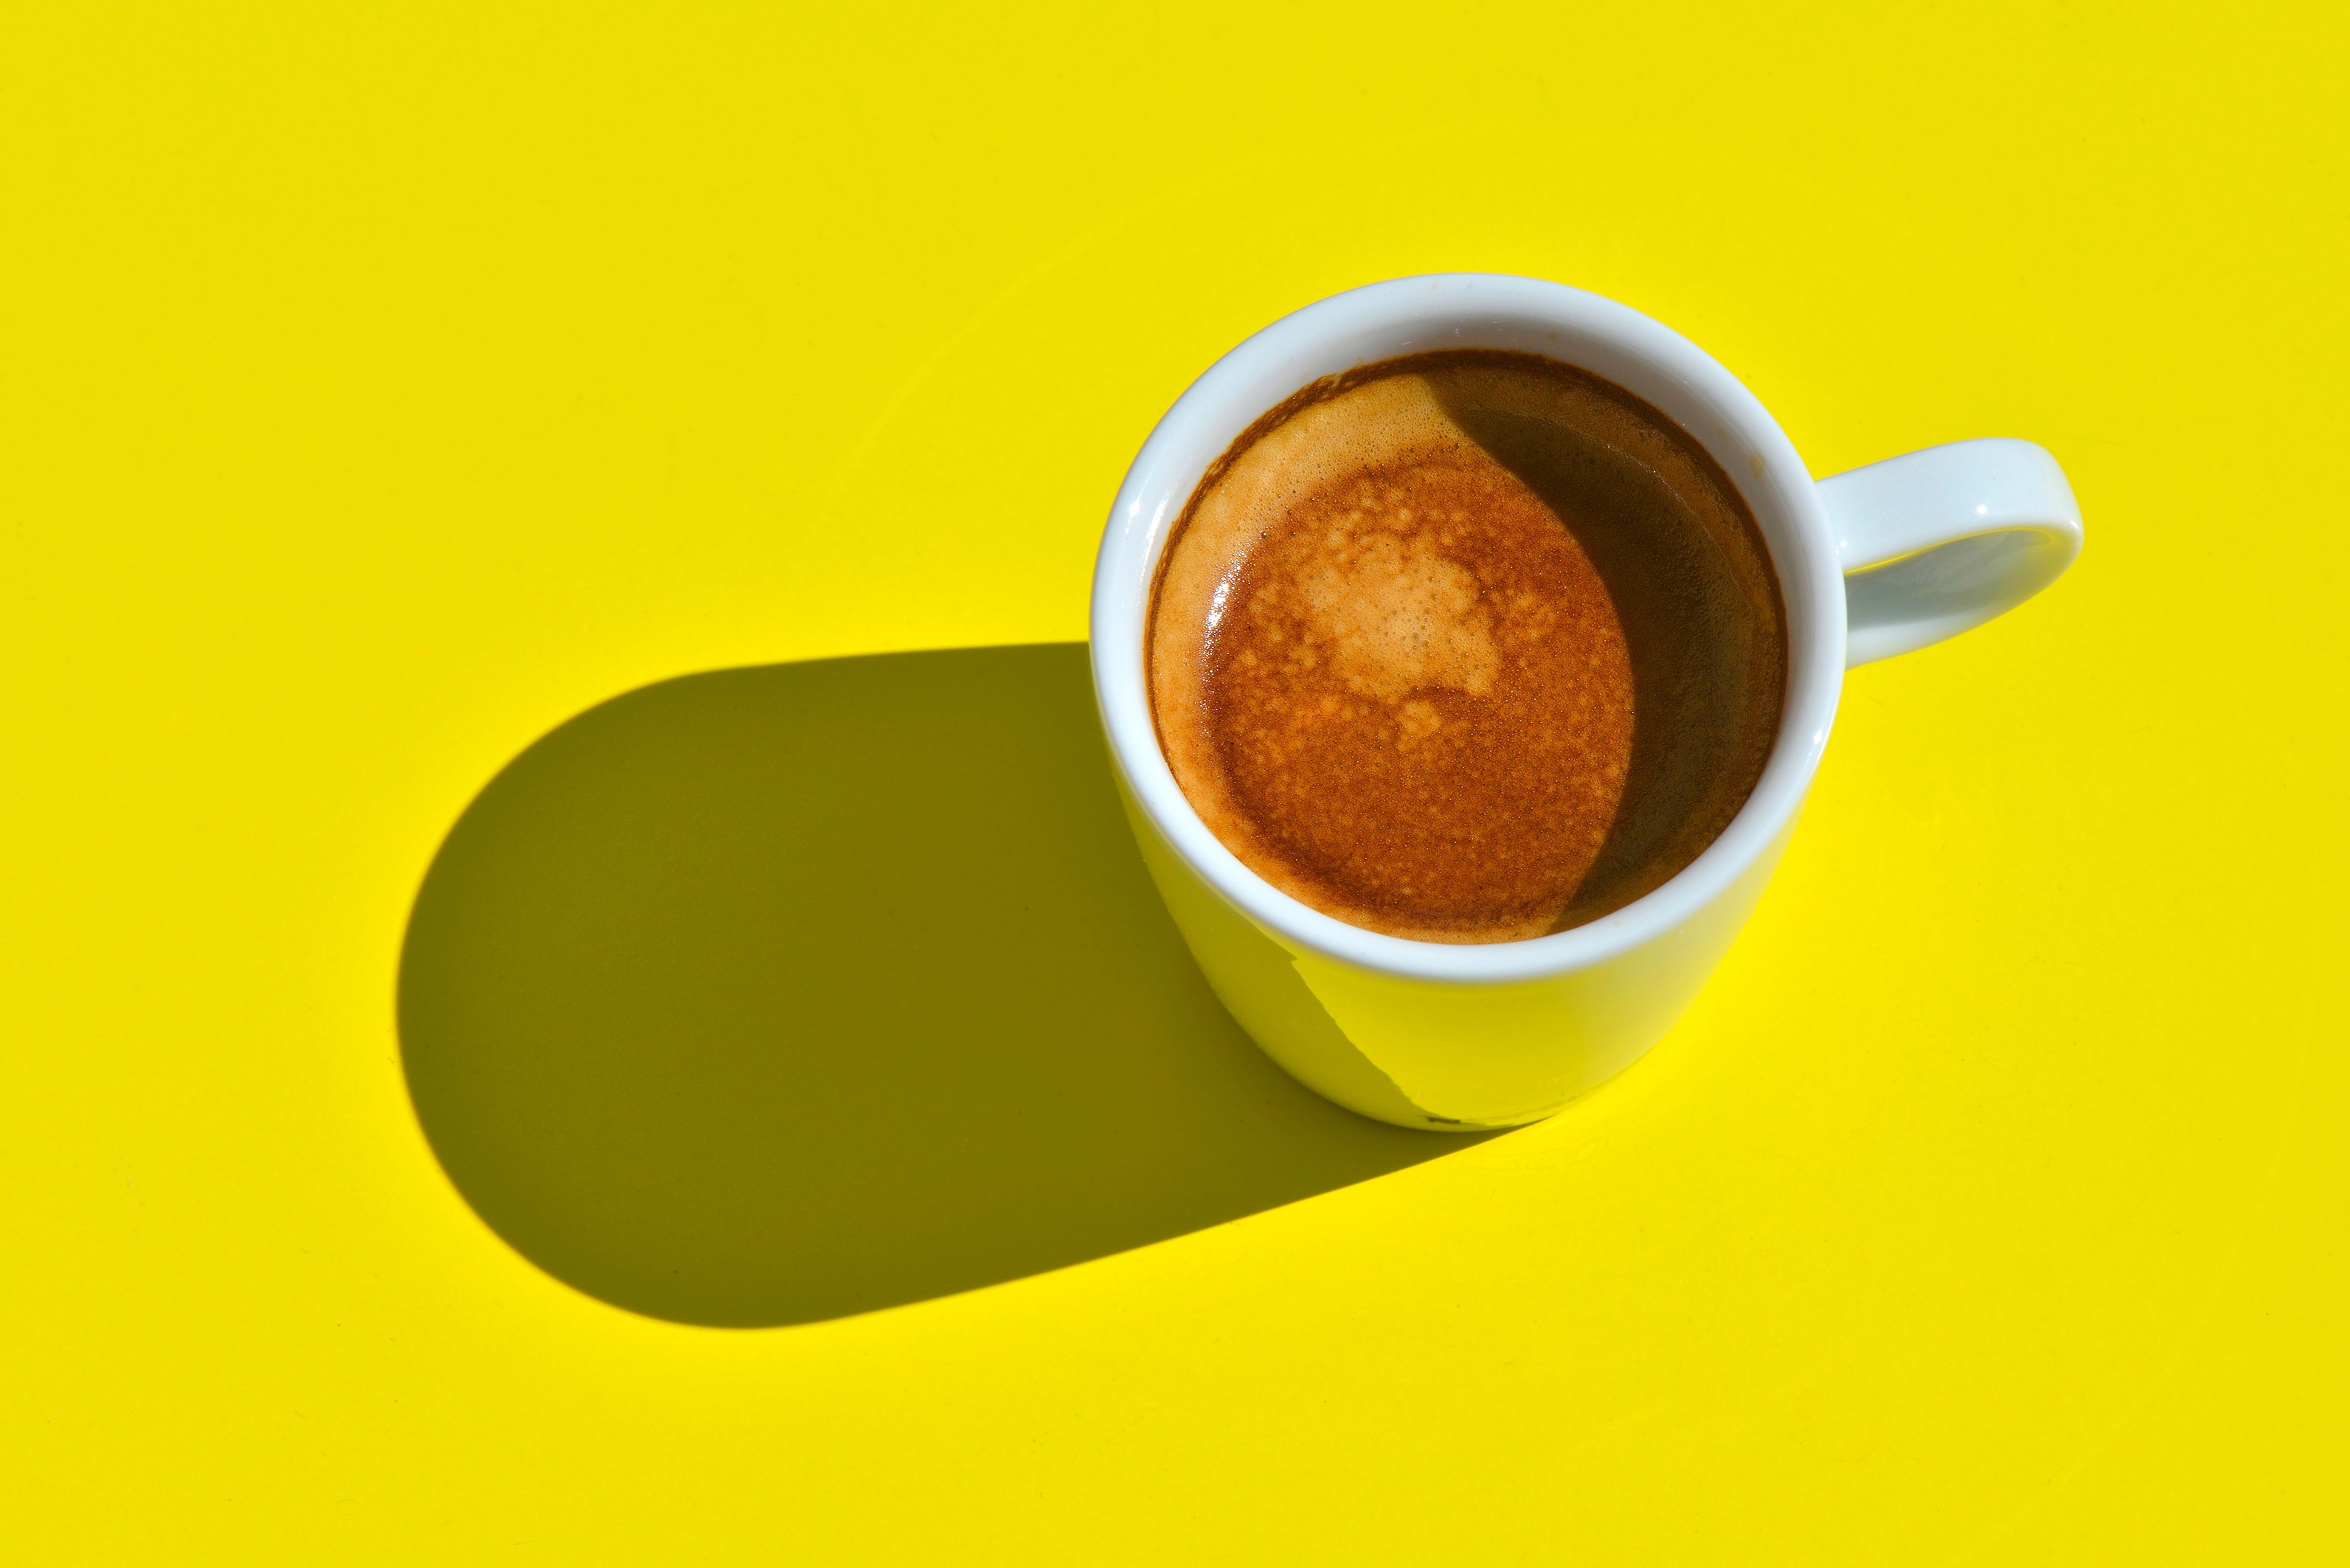 Capsules de café Nespresso, Commande en ligne